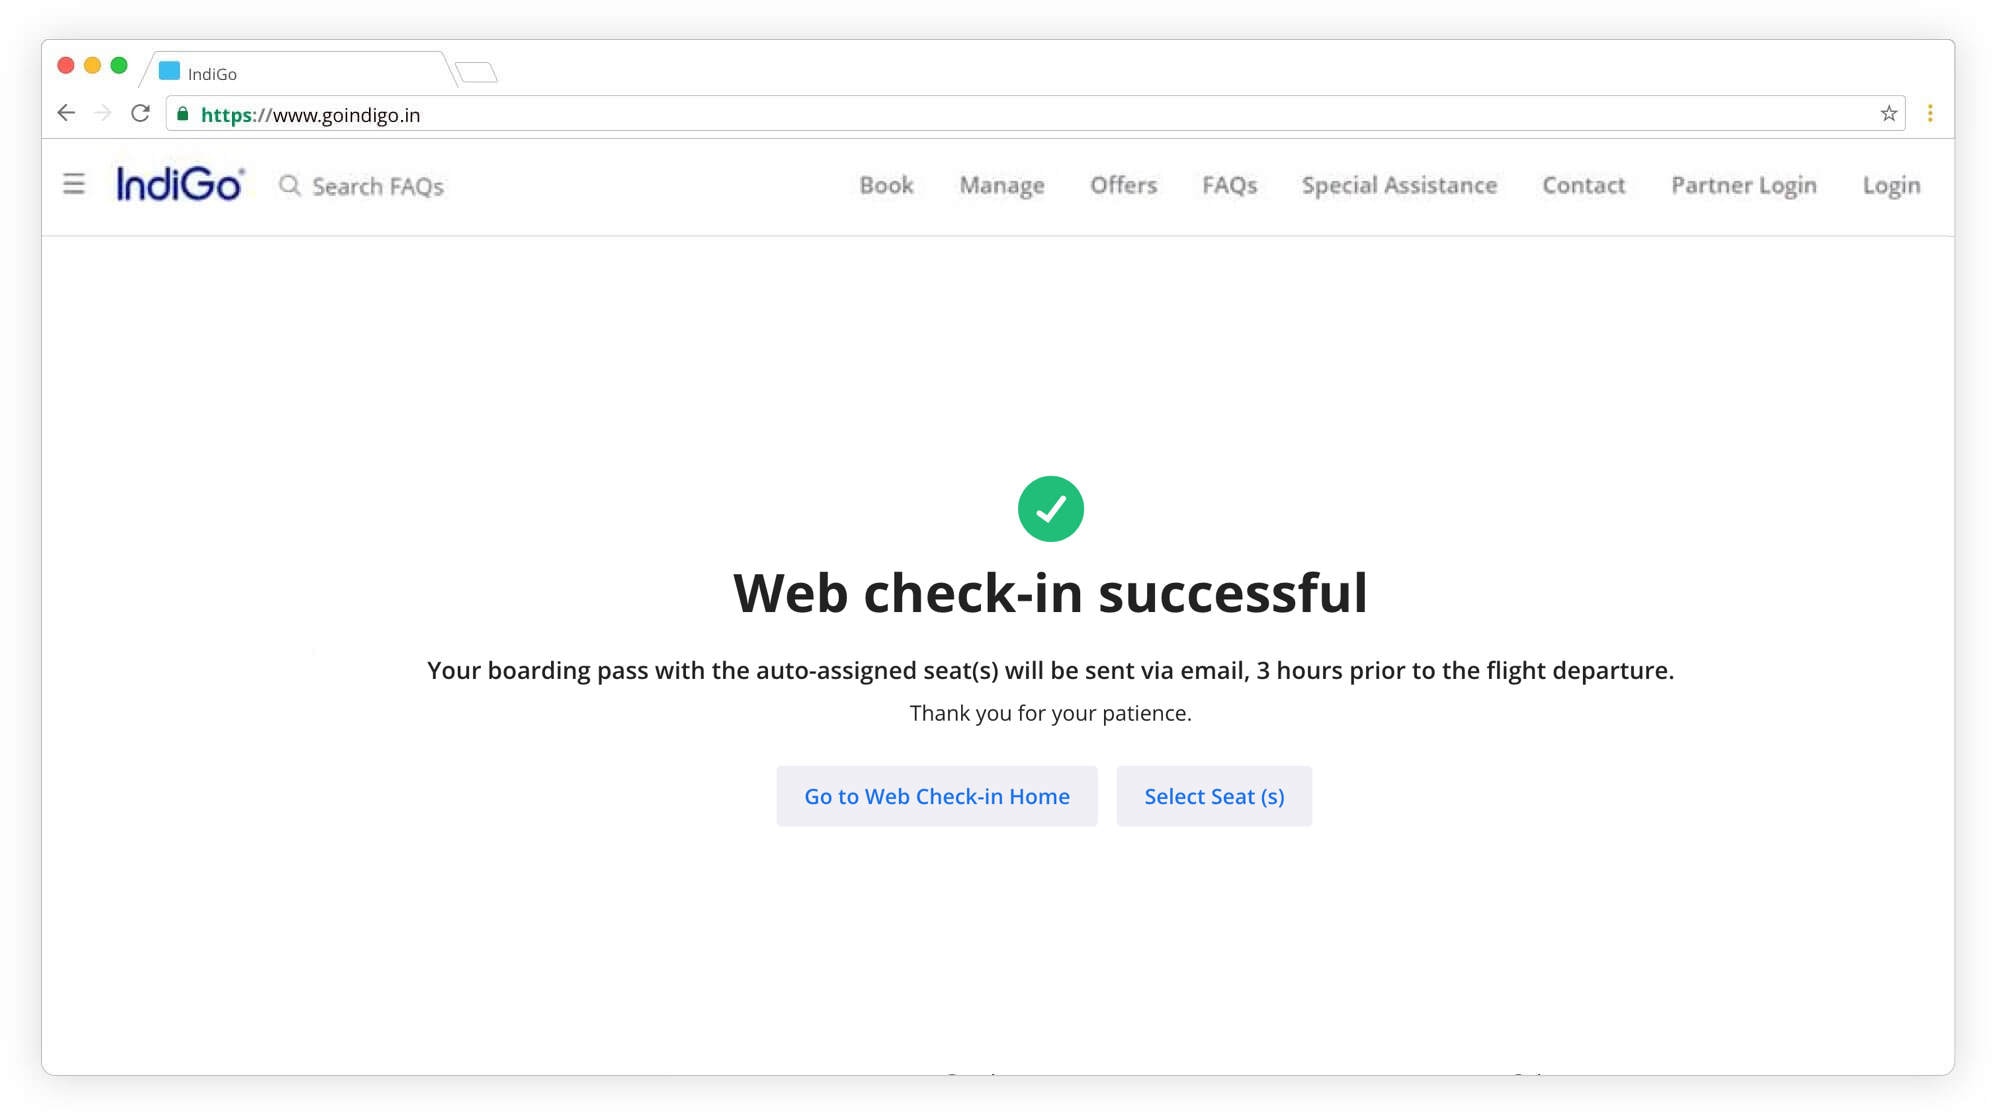 Web check-in successful